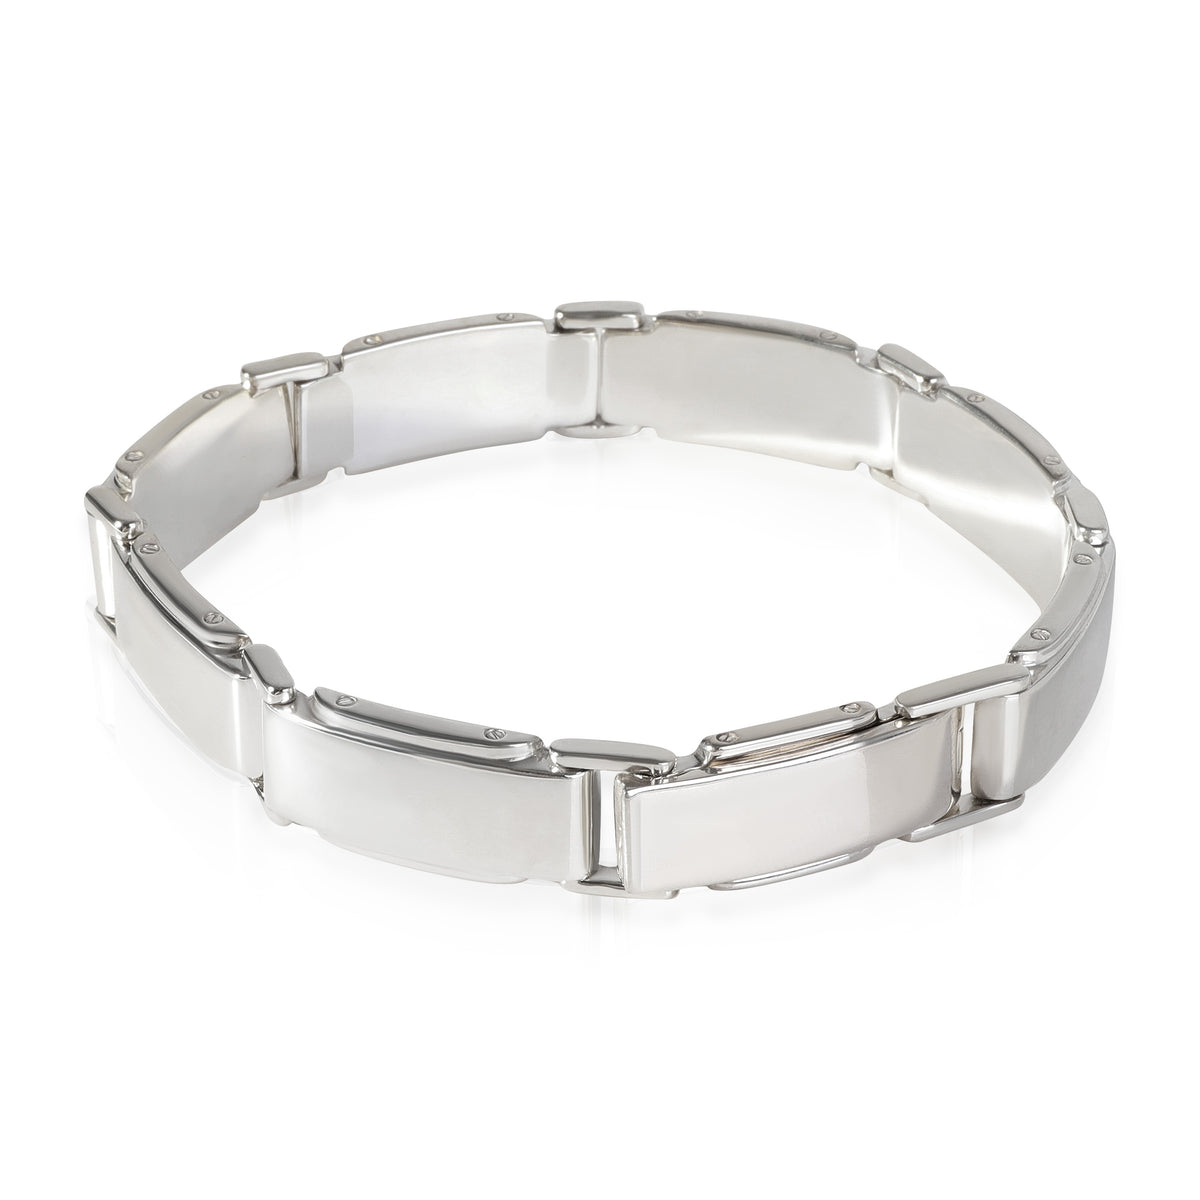 Tiffany & Co. Metropolis Link Bracelet in 925 Sterling Silver